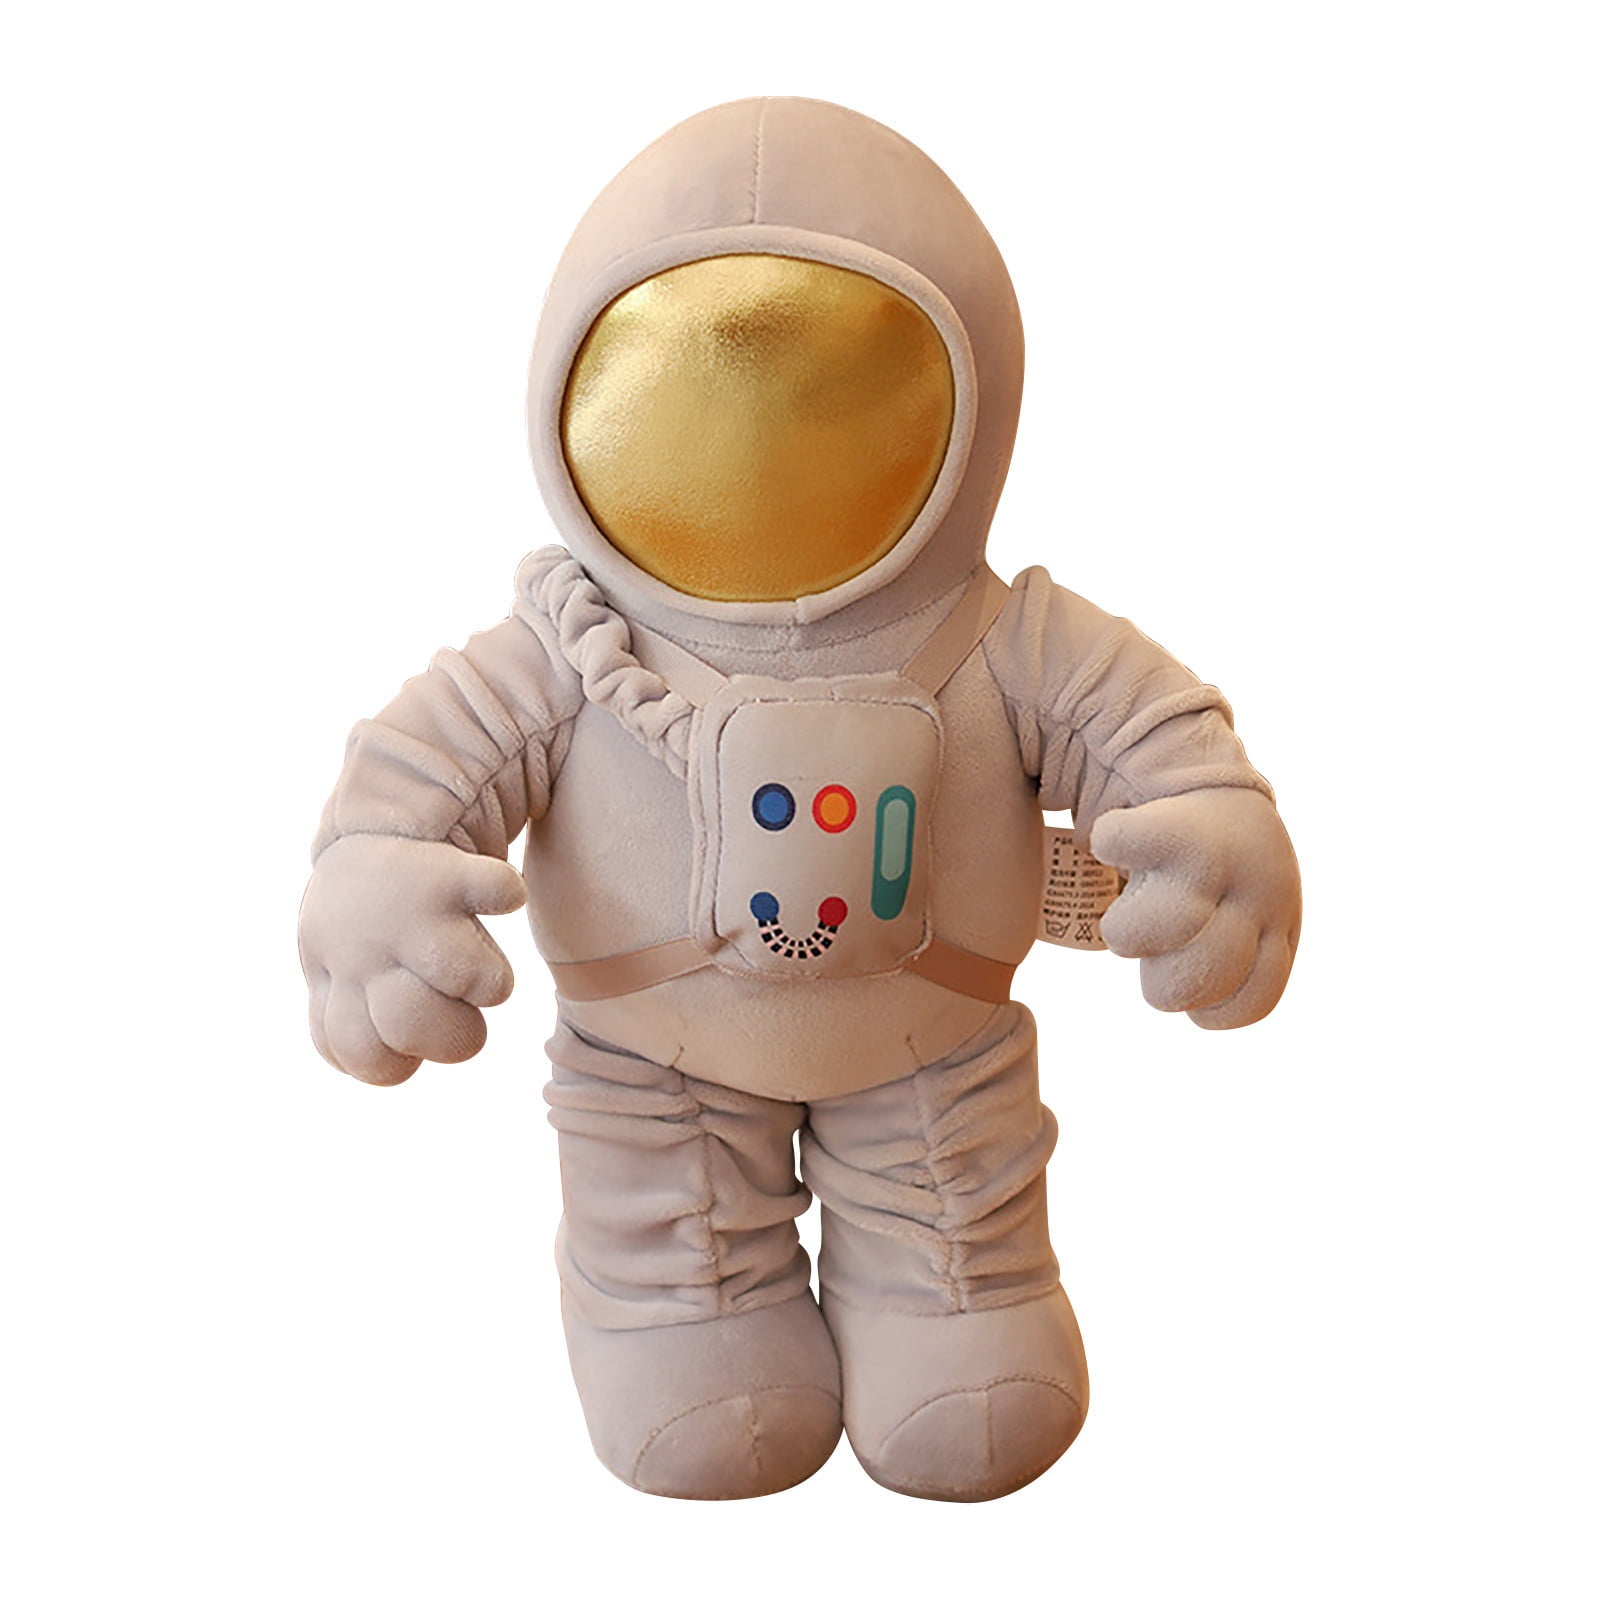 Mnycxen Astronaut Plush Astronaut Soft Toy Stuffed Plush Pillow 